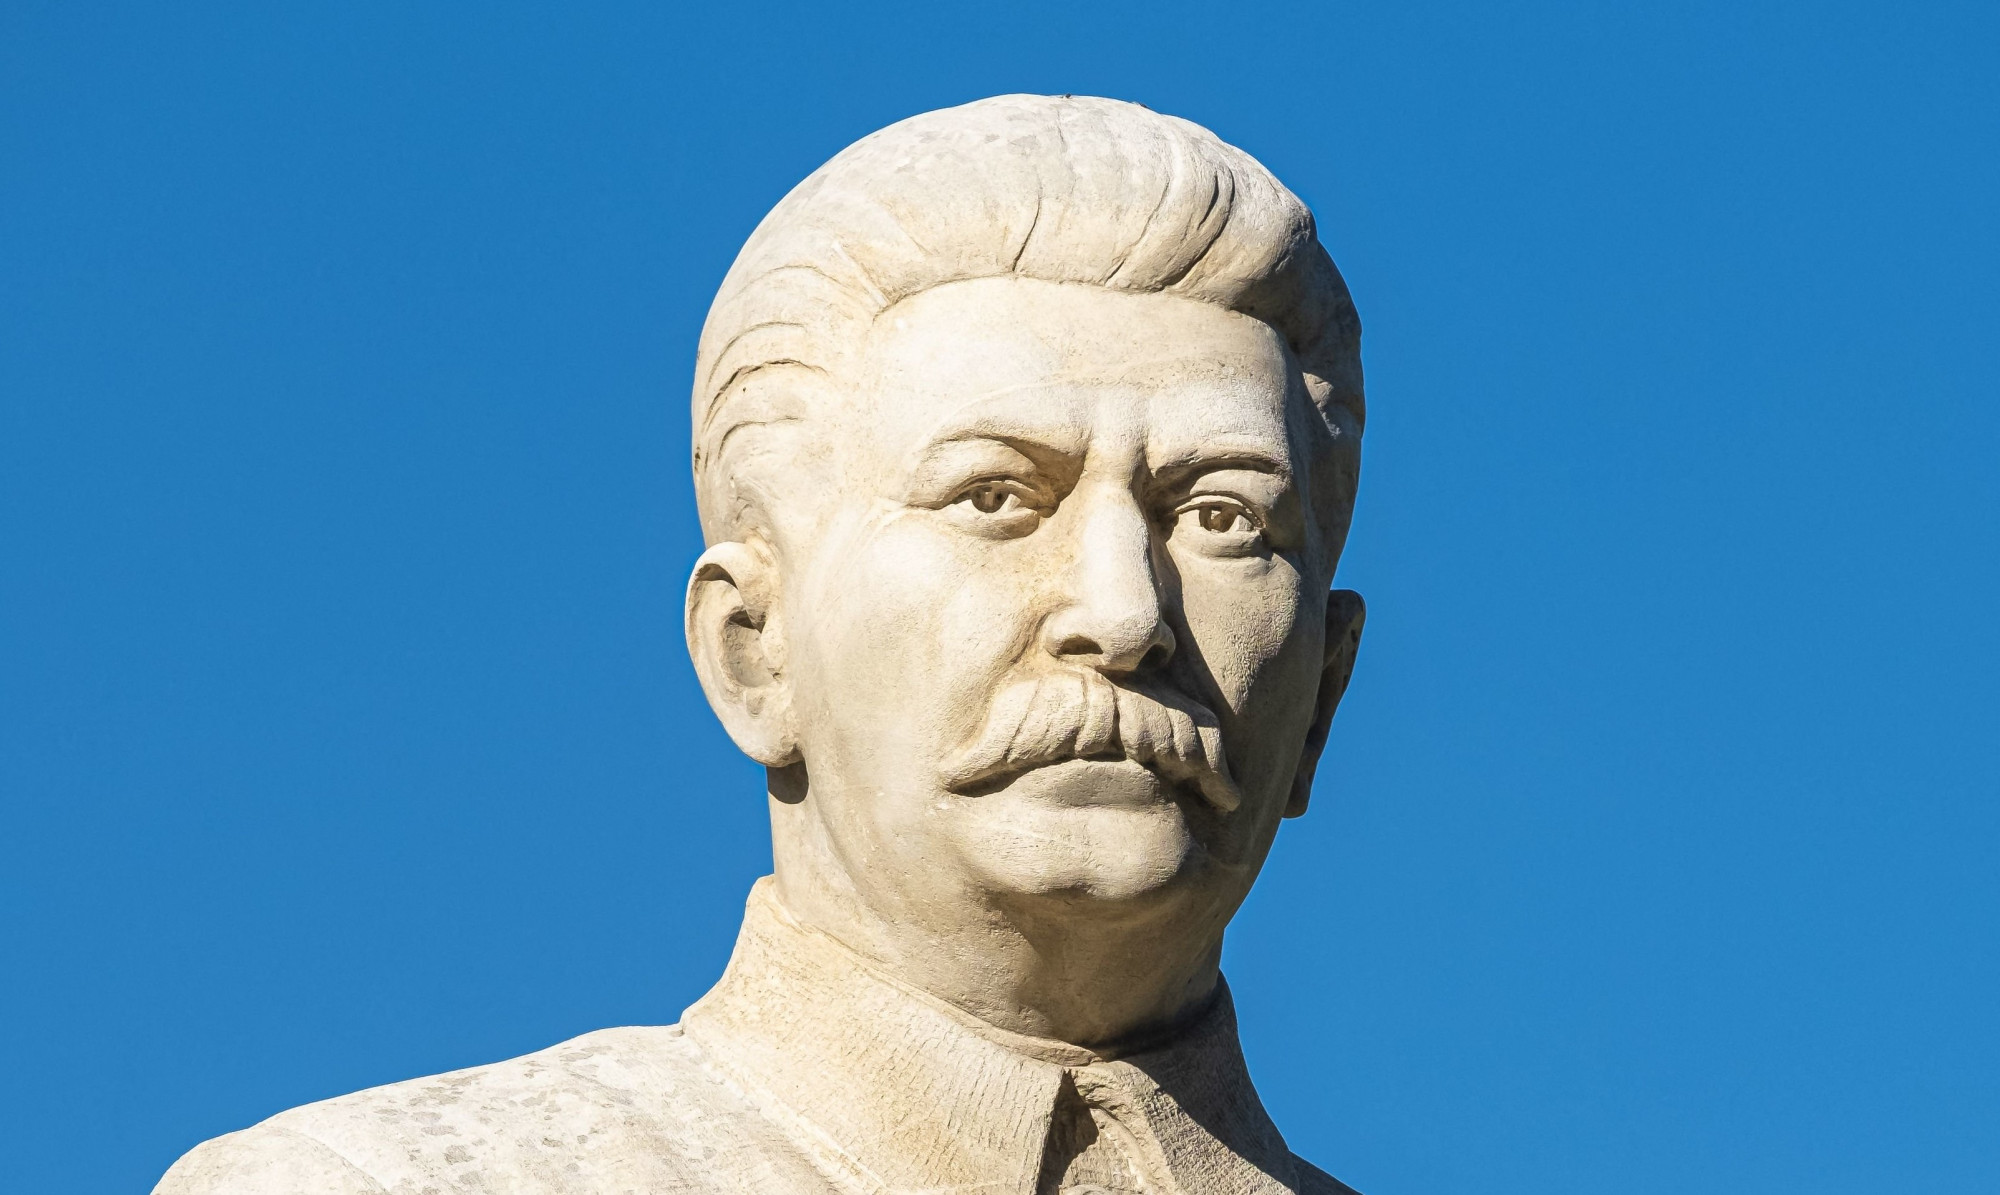 Lefejezték a Sztálin szobrot, amit a szülővárosától nem messze állítottak a szovjet diktátornak